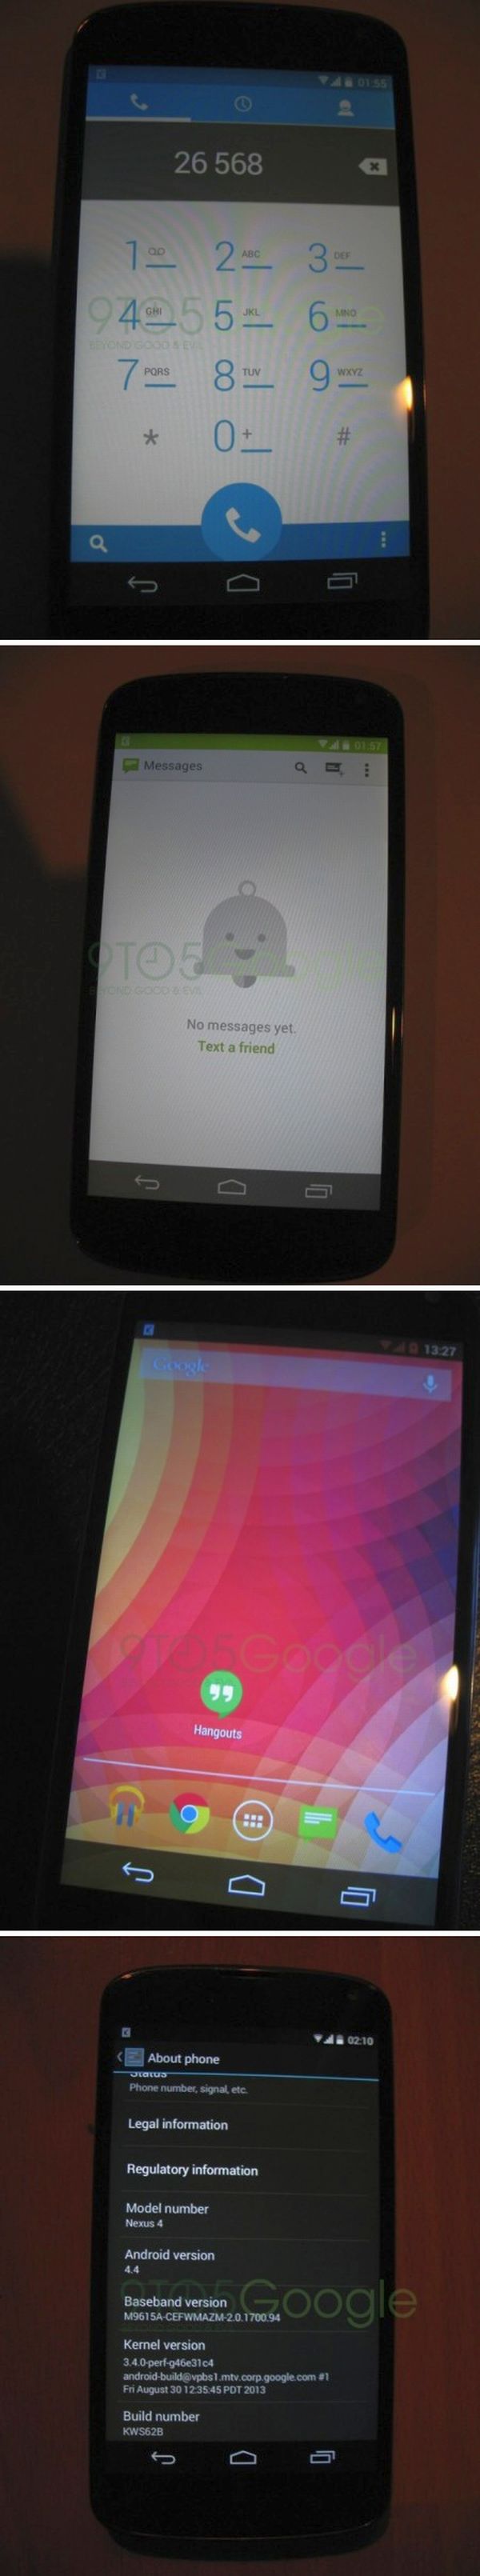 Így néz ki az Android 4.4 KitKat